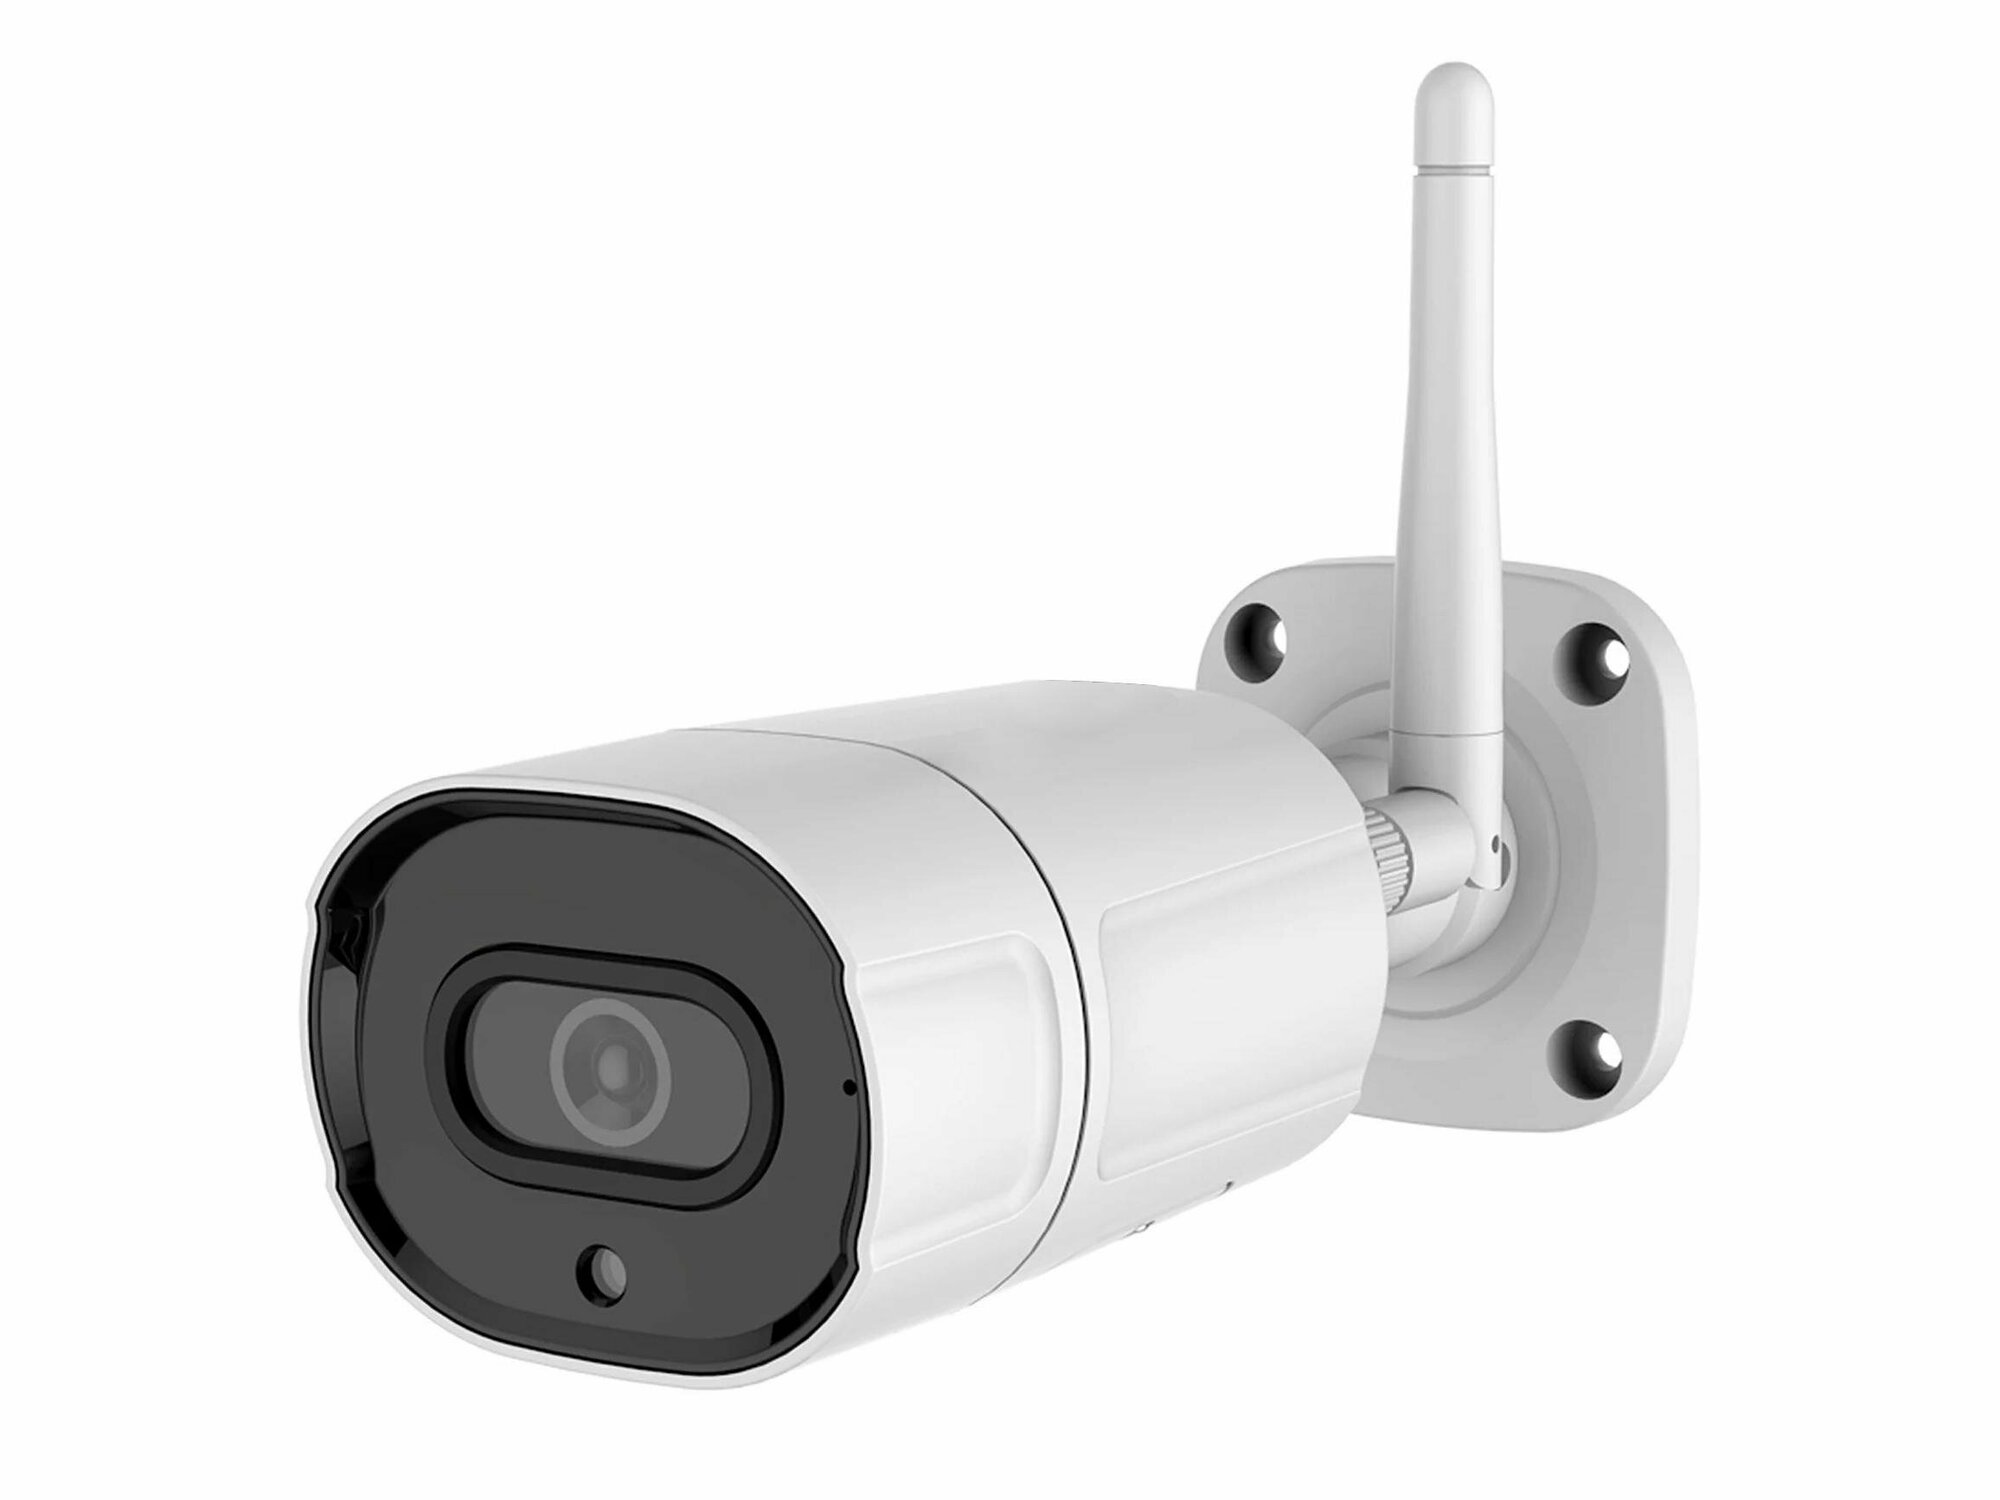 Link 402-ASW8-8GH IP-4k (8Mp) камера - камера видеонаблюдения уличная. Высокое качество 4К (8 Мп, 3840x2160 пикс). в подарочной упаковке